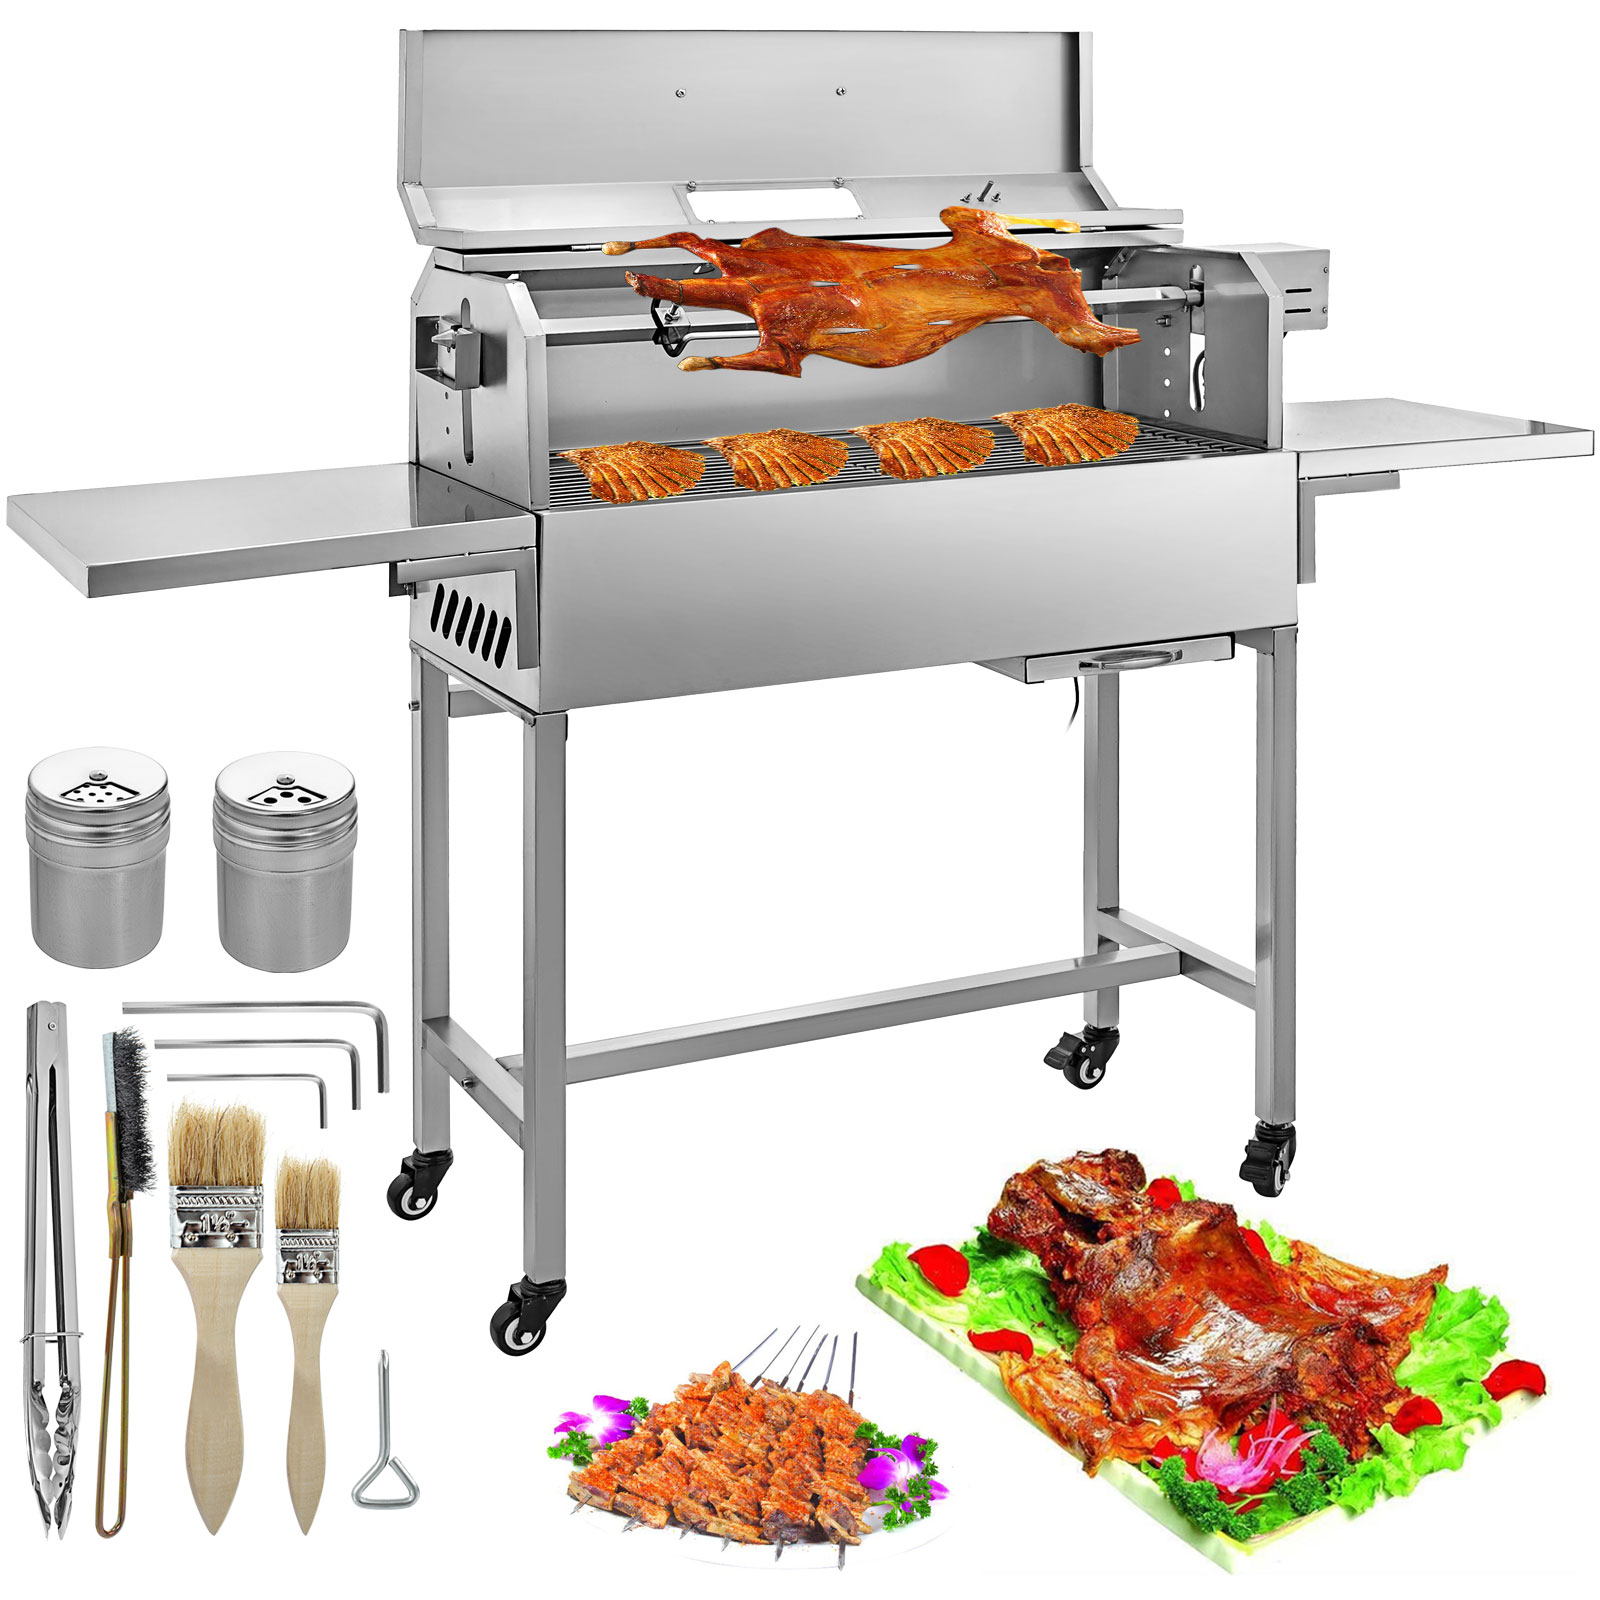 Torcia cucina barbecue professionale,Roeam 2 in 1 mini Torcia di cottura/saldatura per barbecue allaperto/industria 